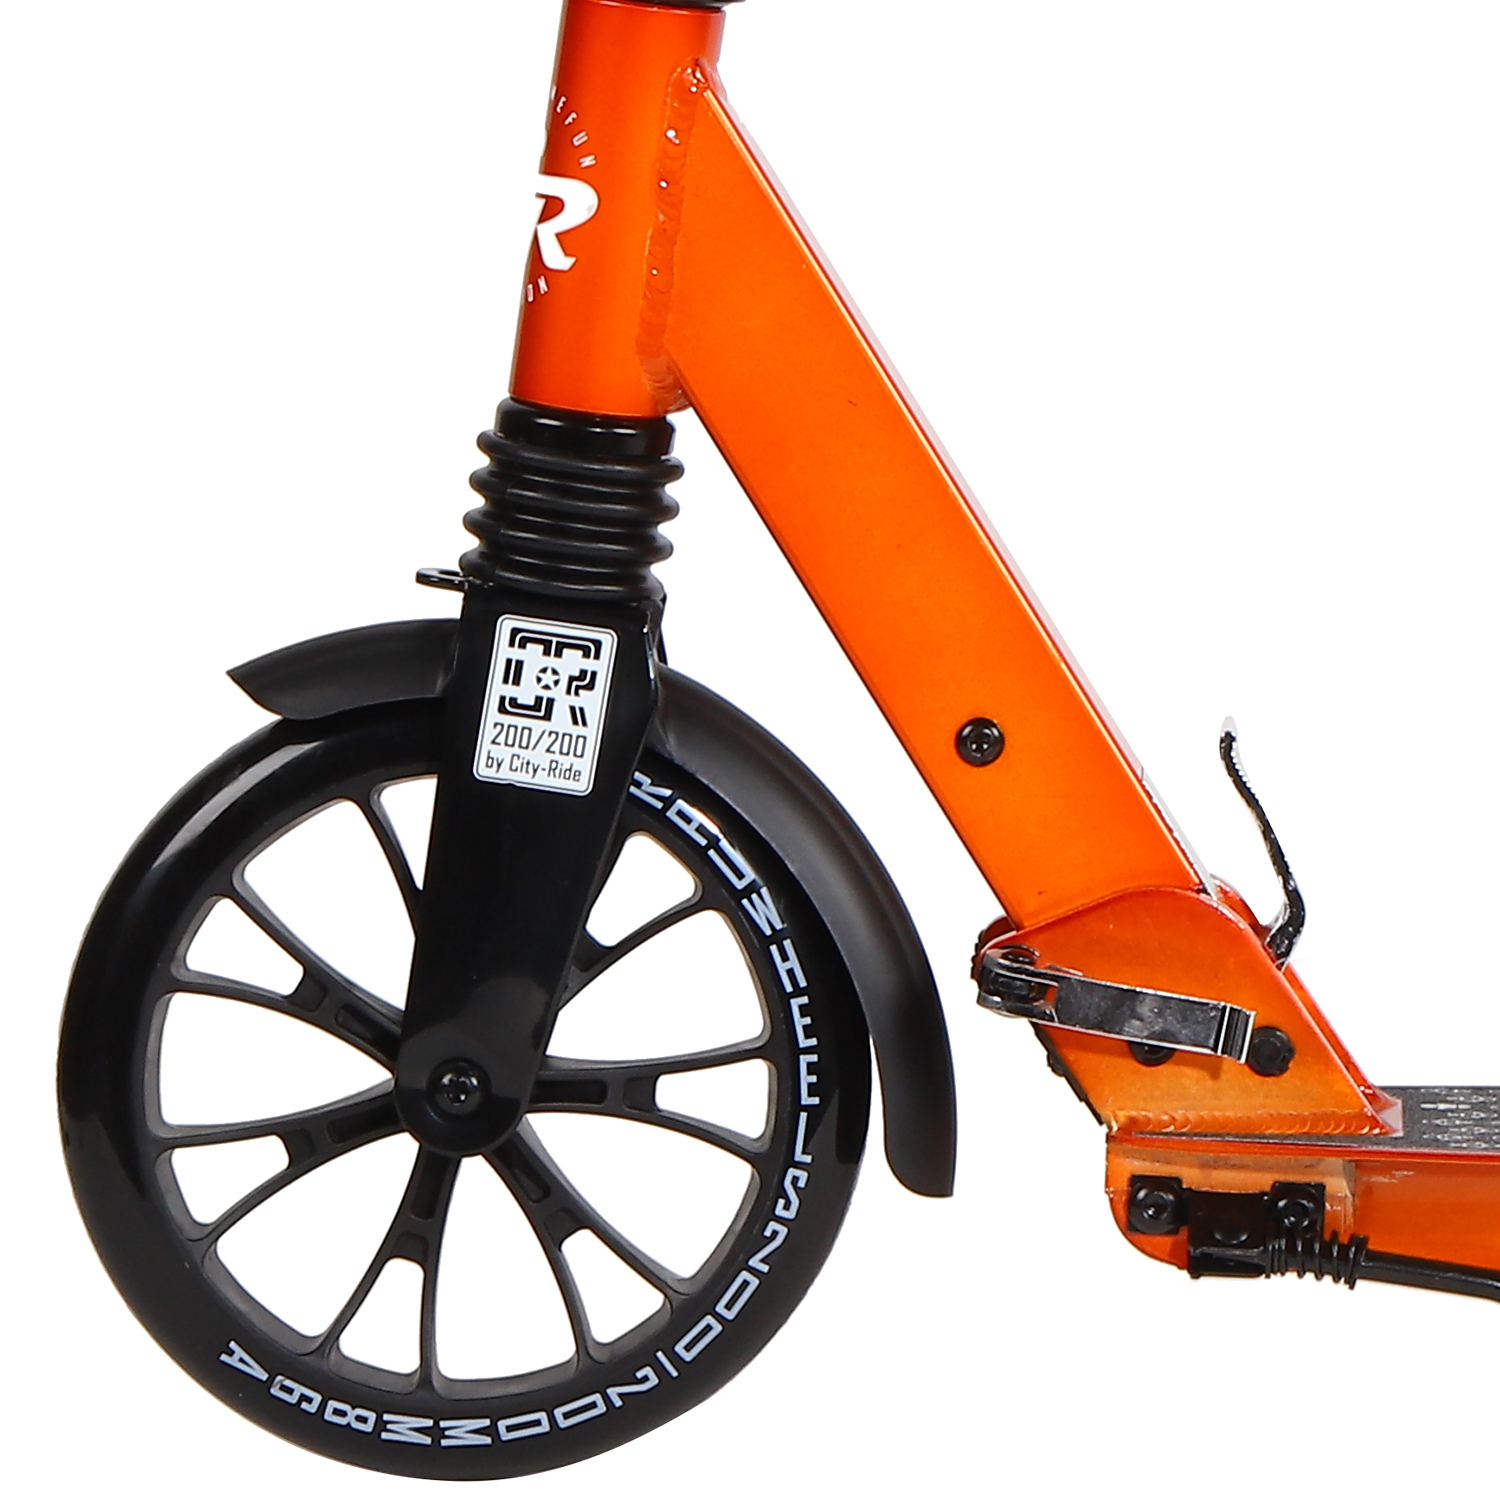 Самокат 2-х колесный City-Ride оранж.-коричнев. колеса 200/200 дек 57*13см,складн,поднож